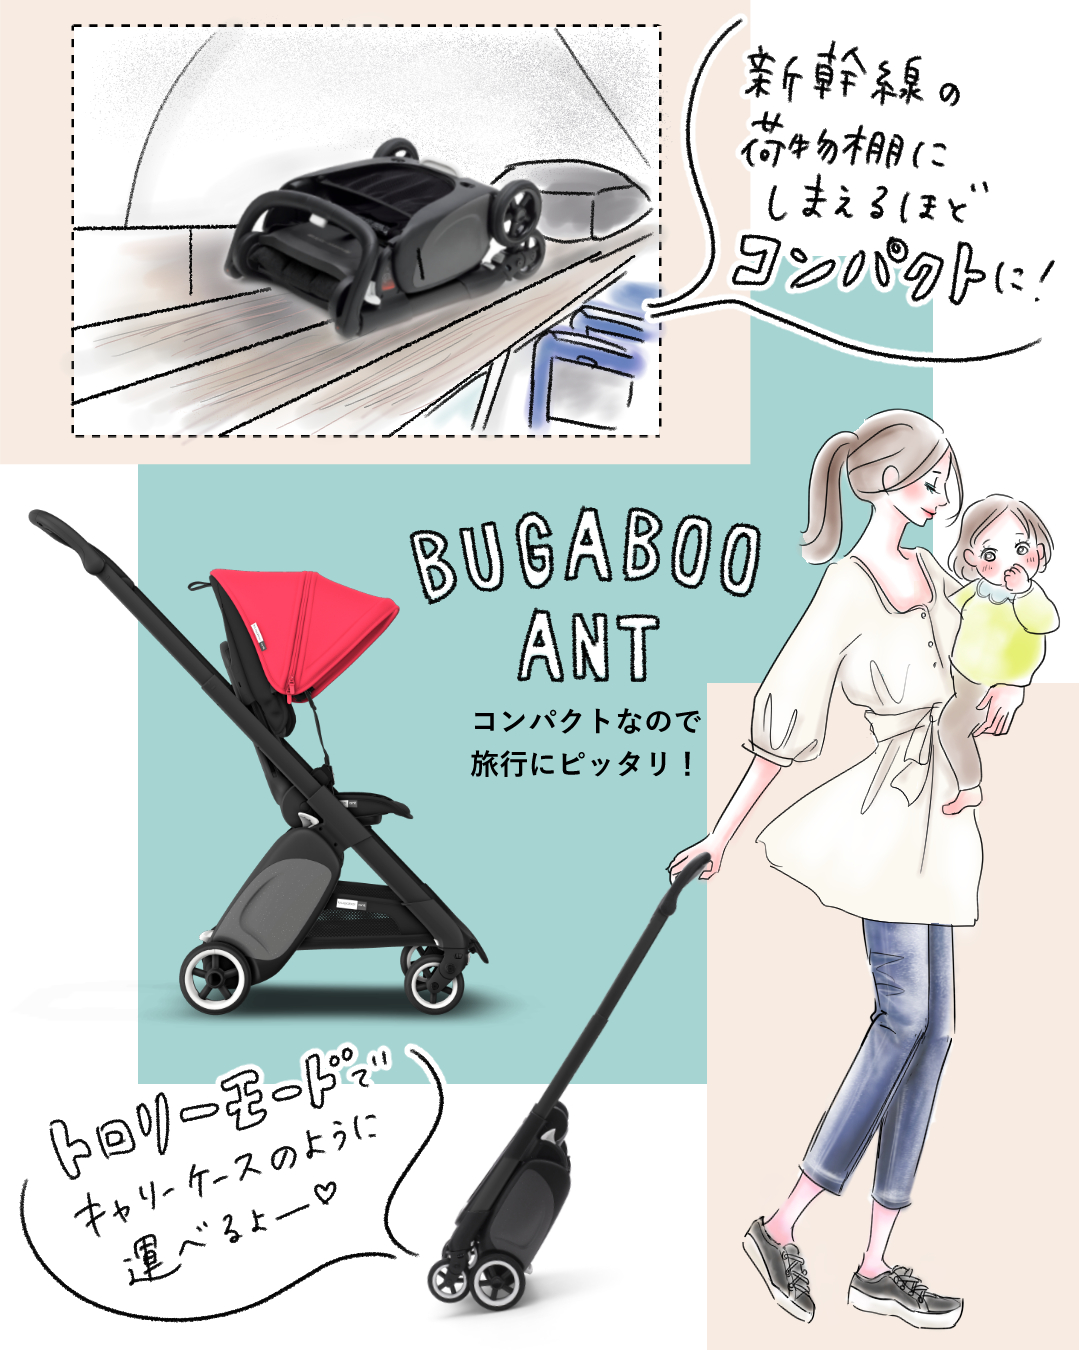 バガブーアント Bugaboo ANT ☆新品の専用レインカバー付き+